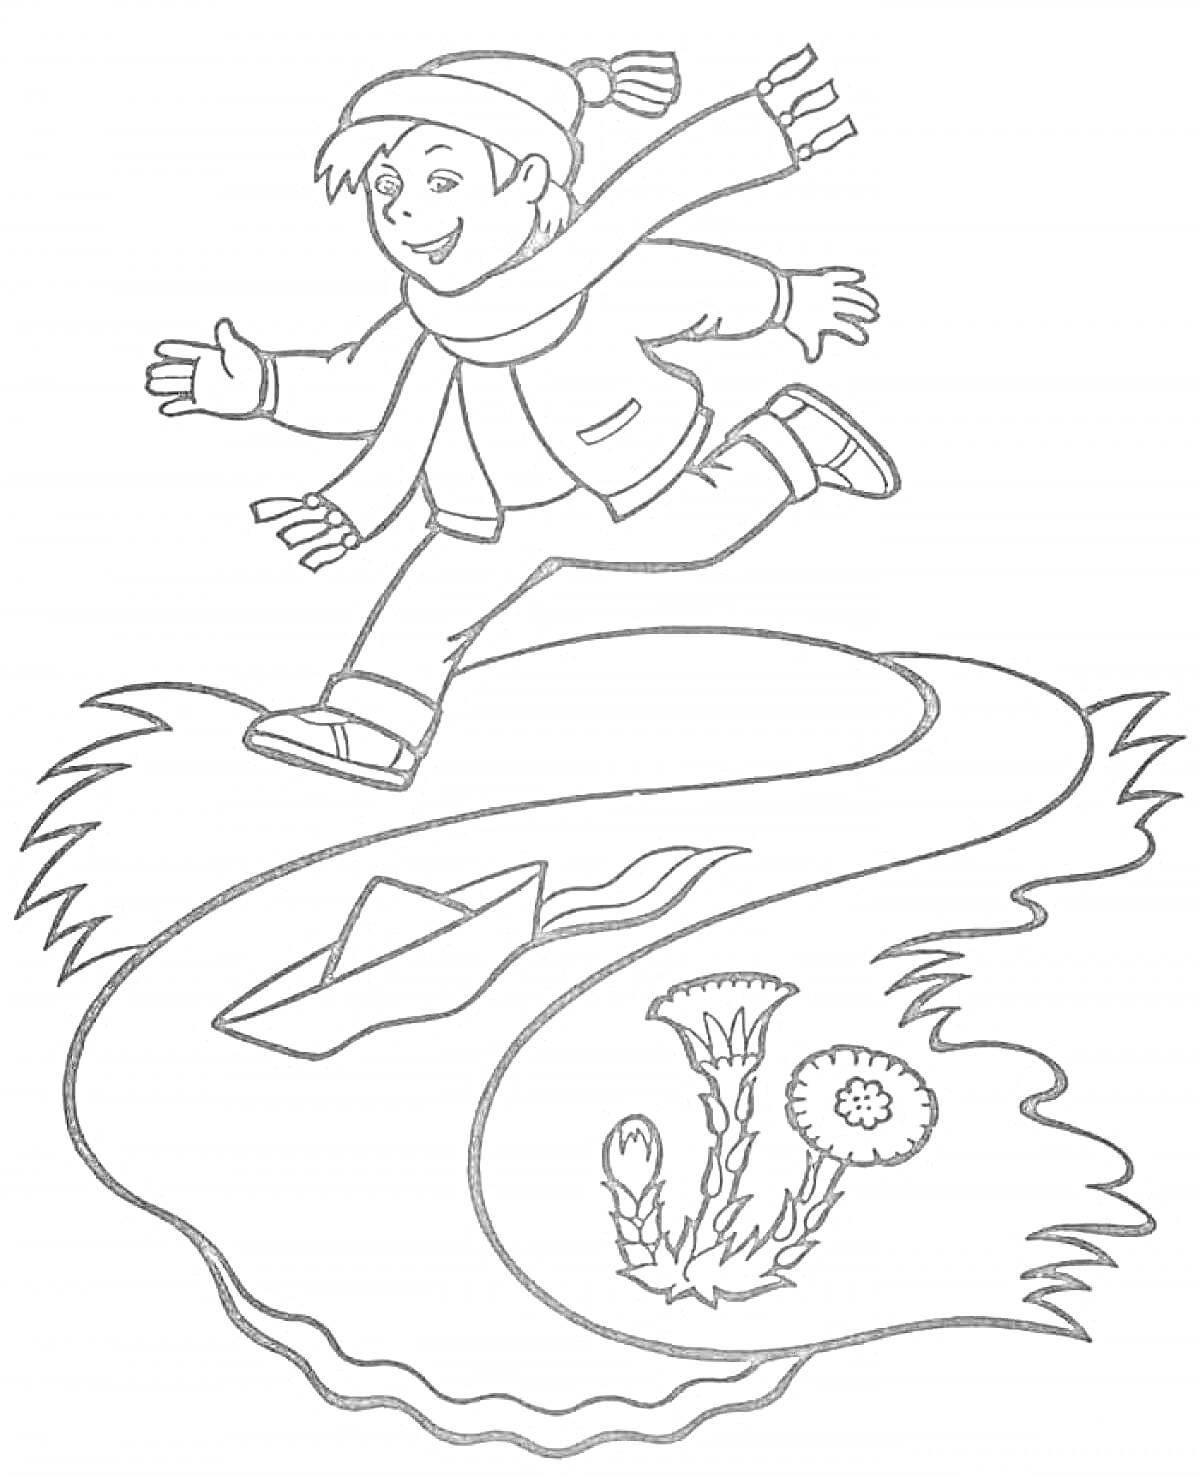 Раскраска Мальчик в теплой одежде бежит вдоль ручья с бумажным корабликом, рядом с которым растет одуванчик